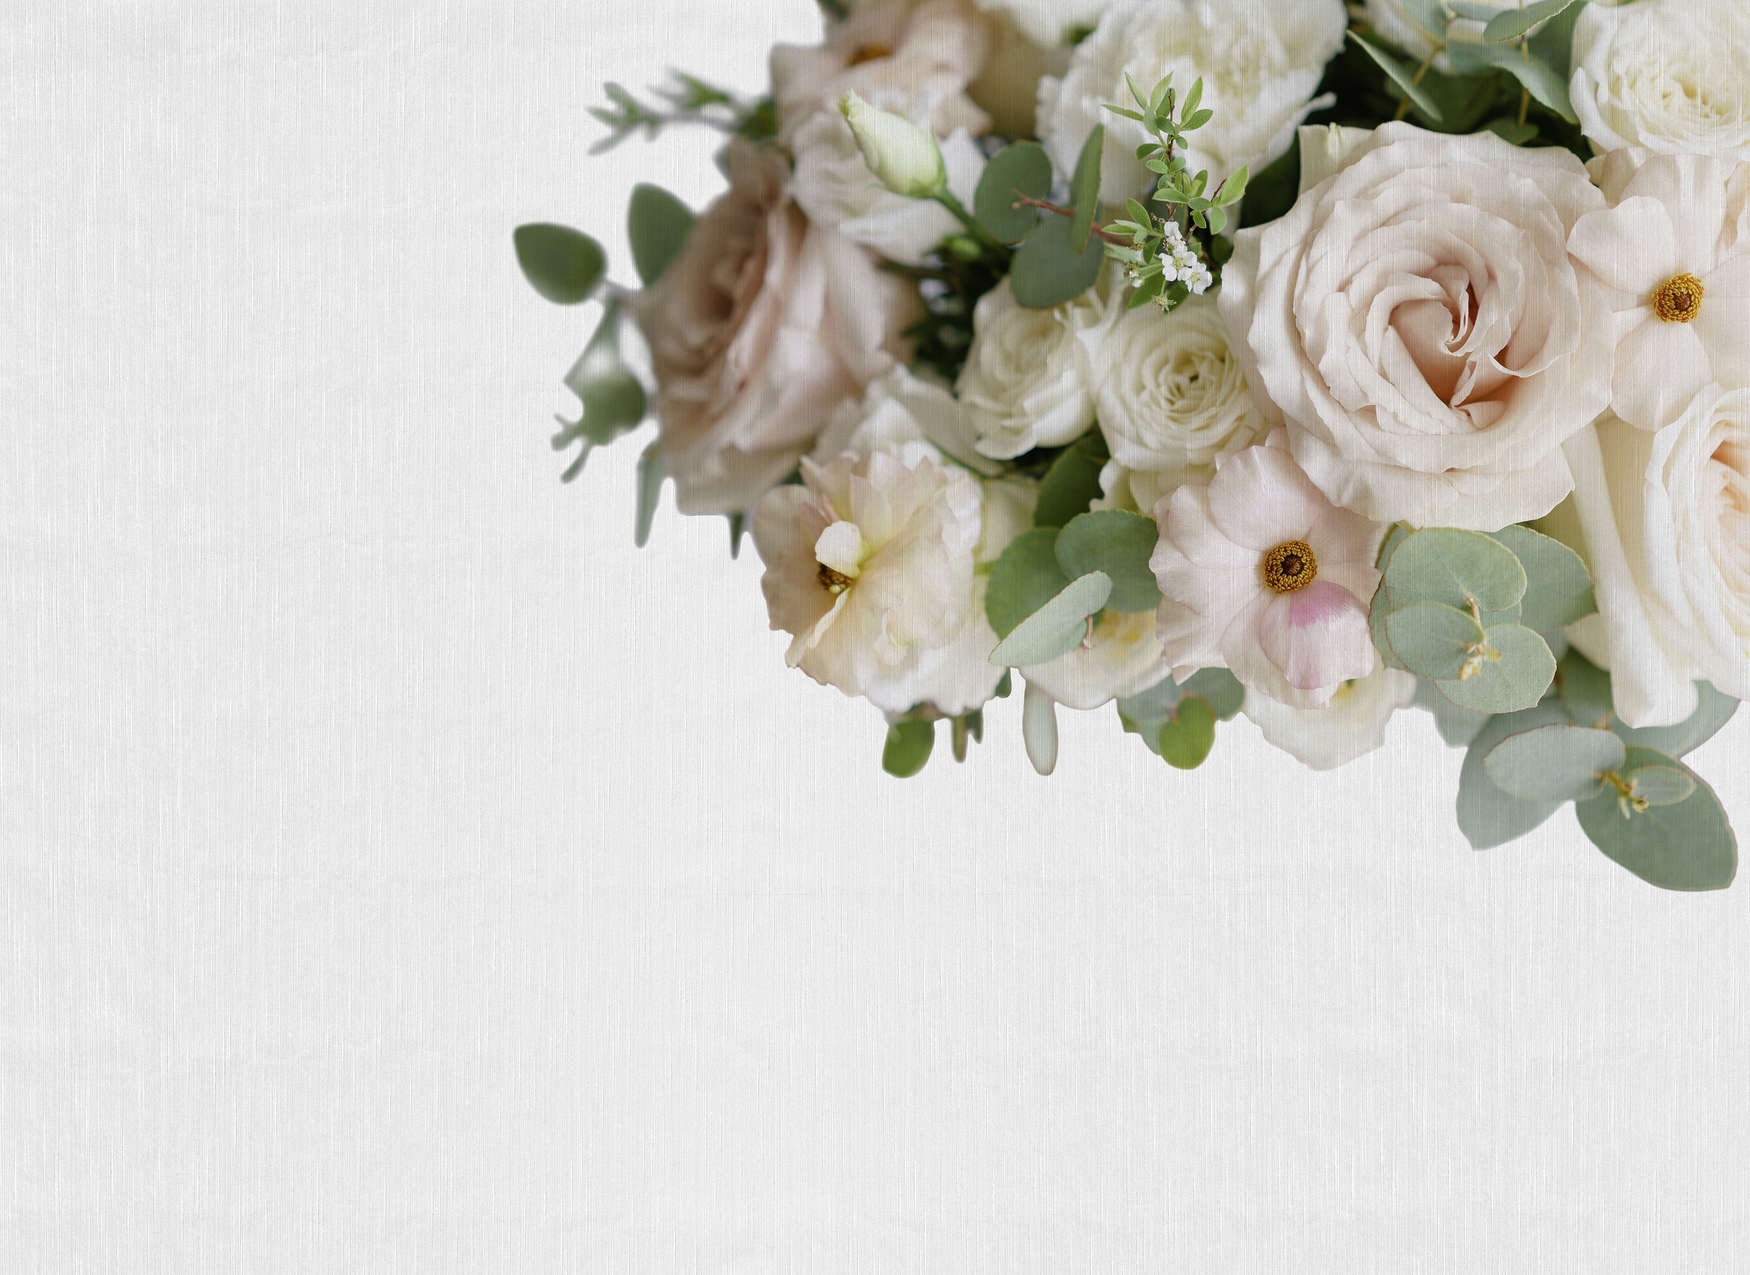             Fototapete Blumenbouquet aus Rosen und Eukalyptus – Rosa, Grün, Weiß
        